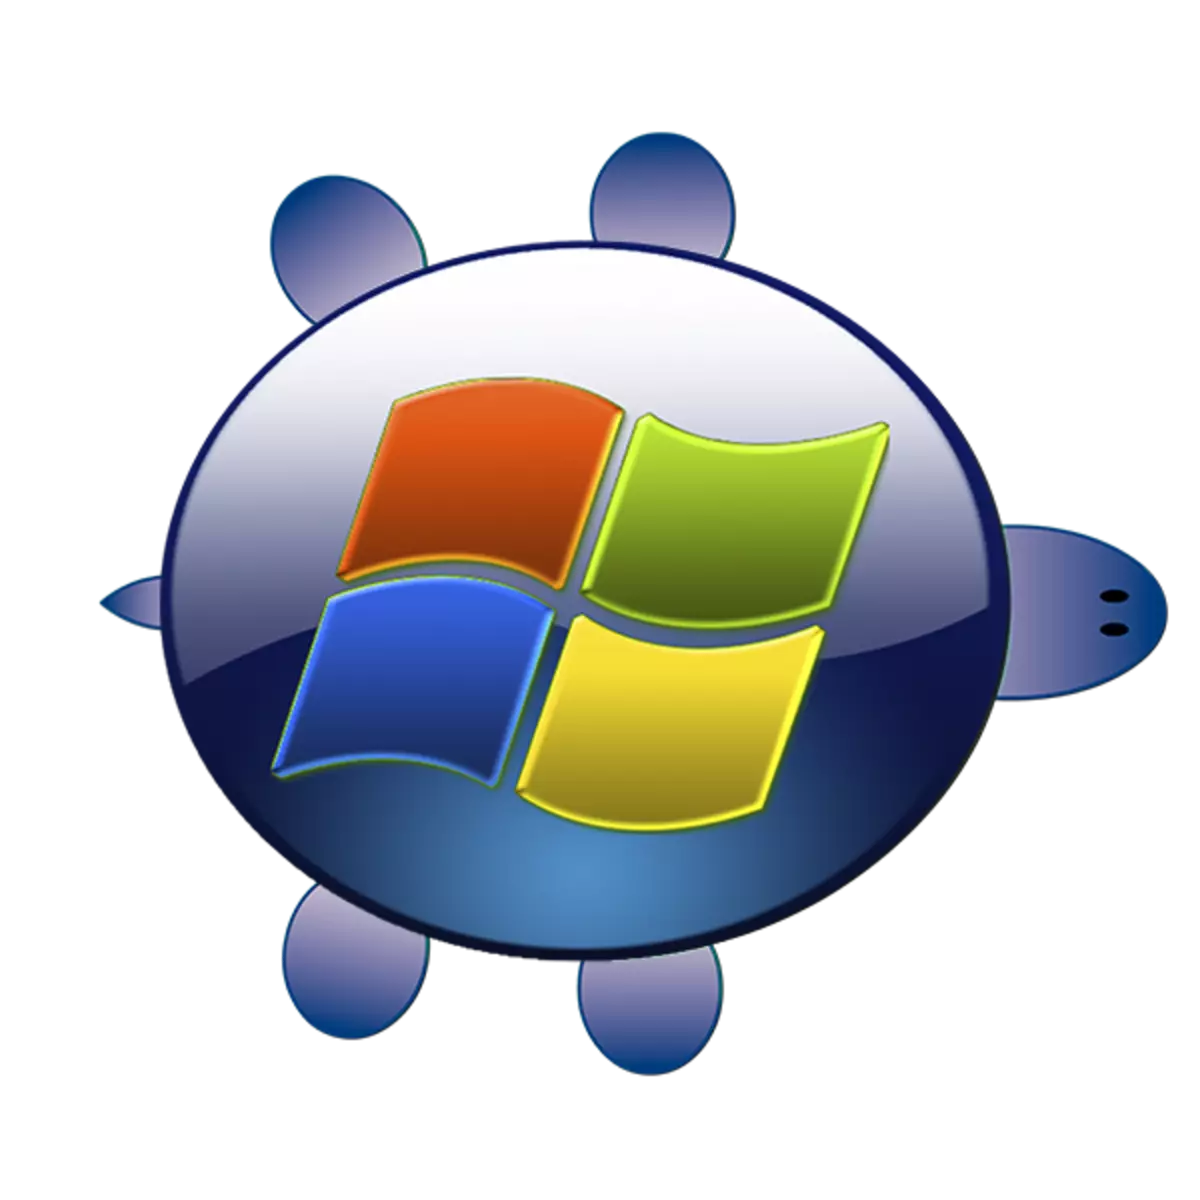 Abin da za a yi idan komputa tayi jinkiri a kan Windows XP